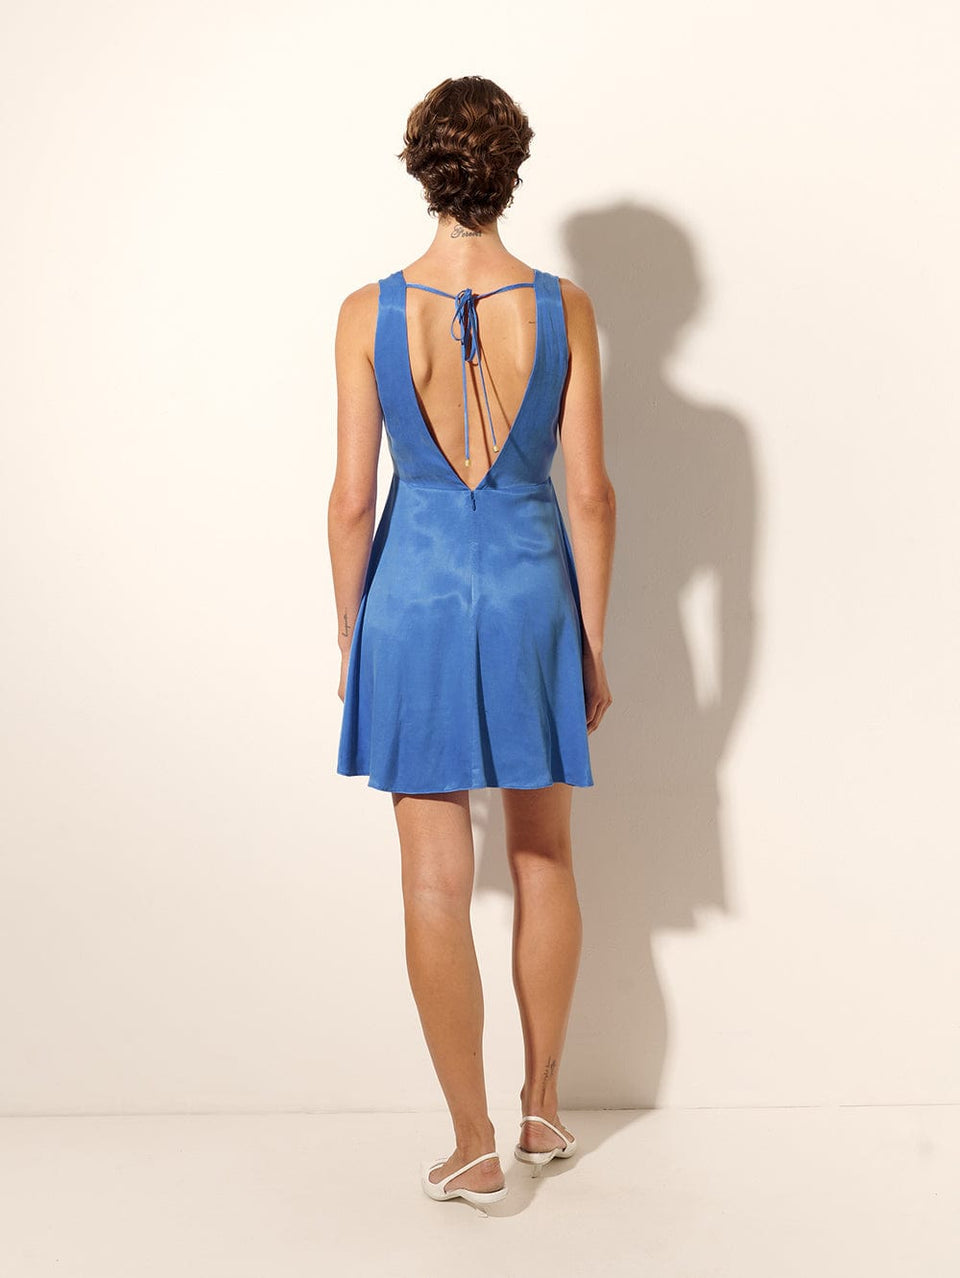 Raya Mini Dress KIVARI | Model wears blue mini dress back view